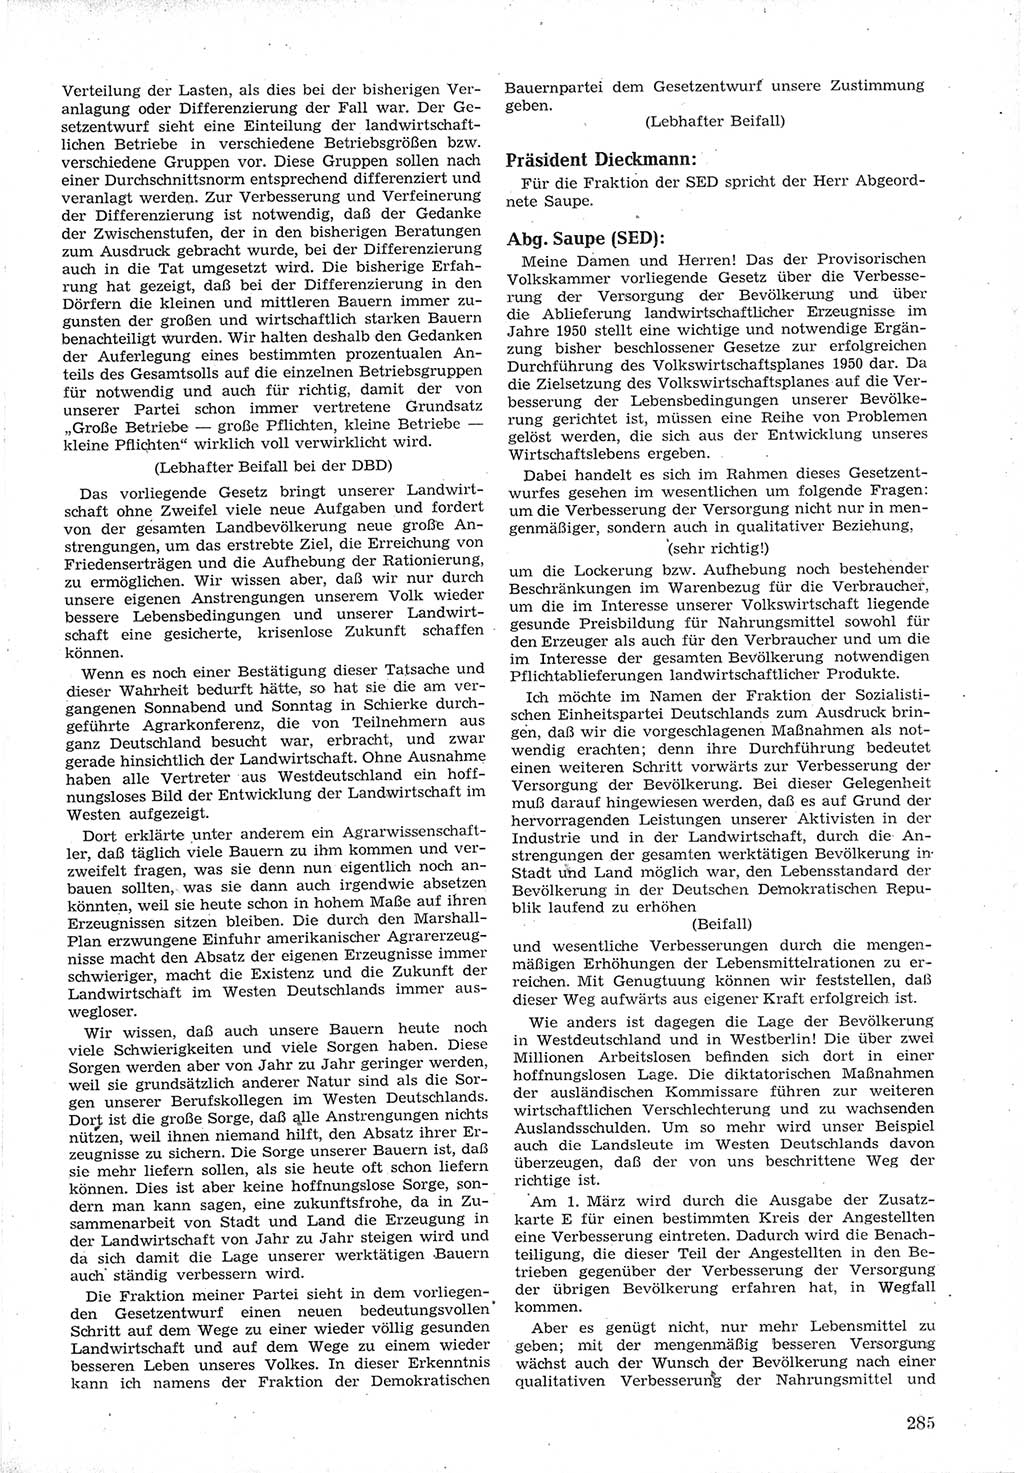 Provisorische Volkskammer (VK) der Deutschen Demokratischen Republik (DDR) 1949-1950, Dokument 299 (Prov. VK DDR 1949-1950, Dok. 299)